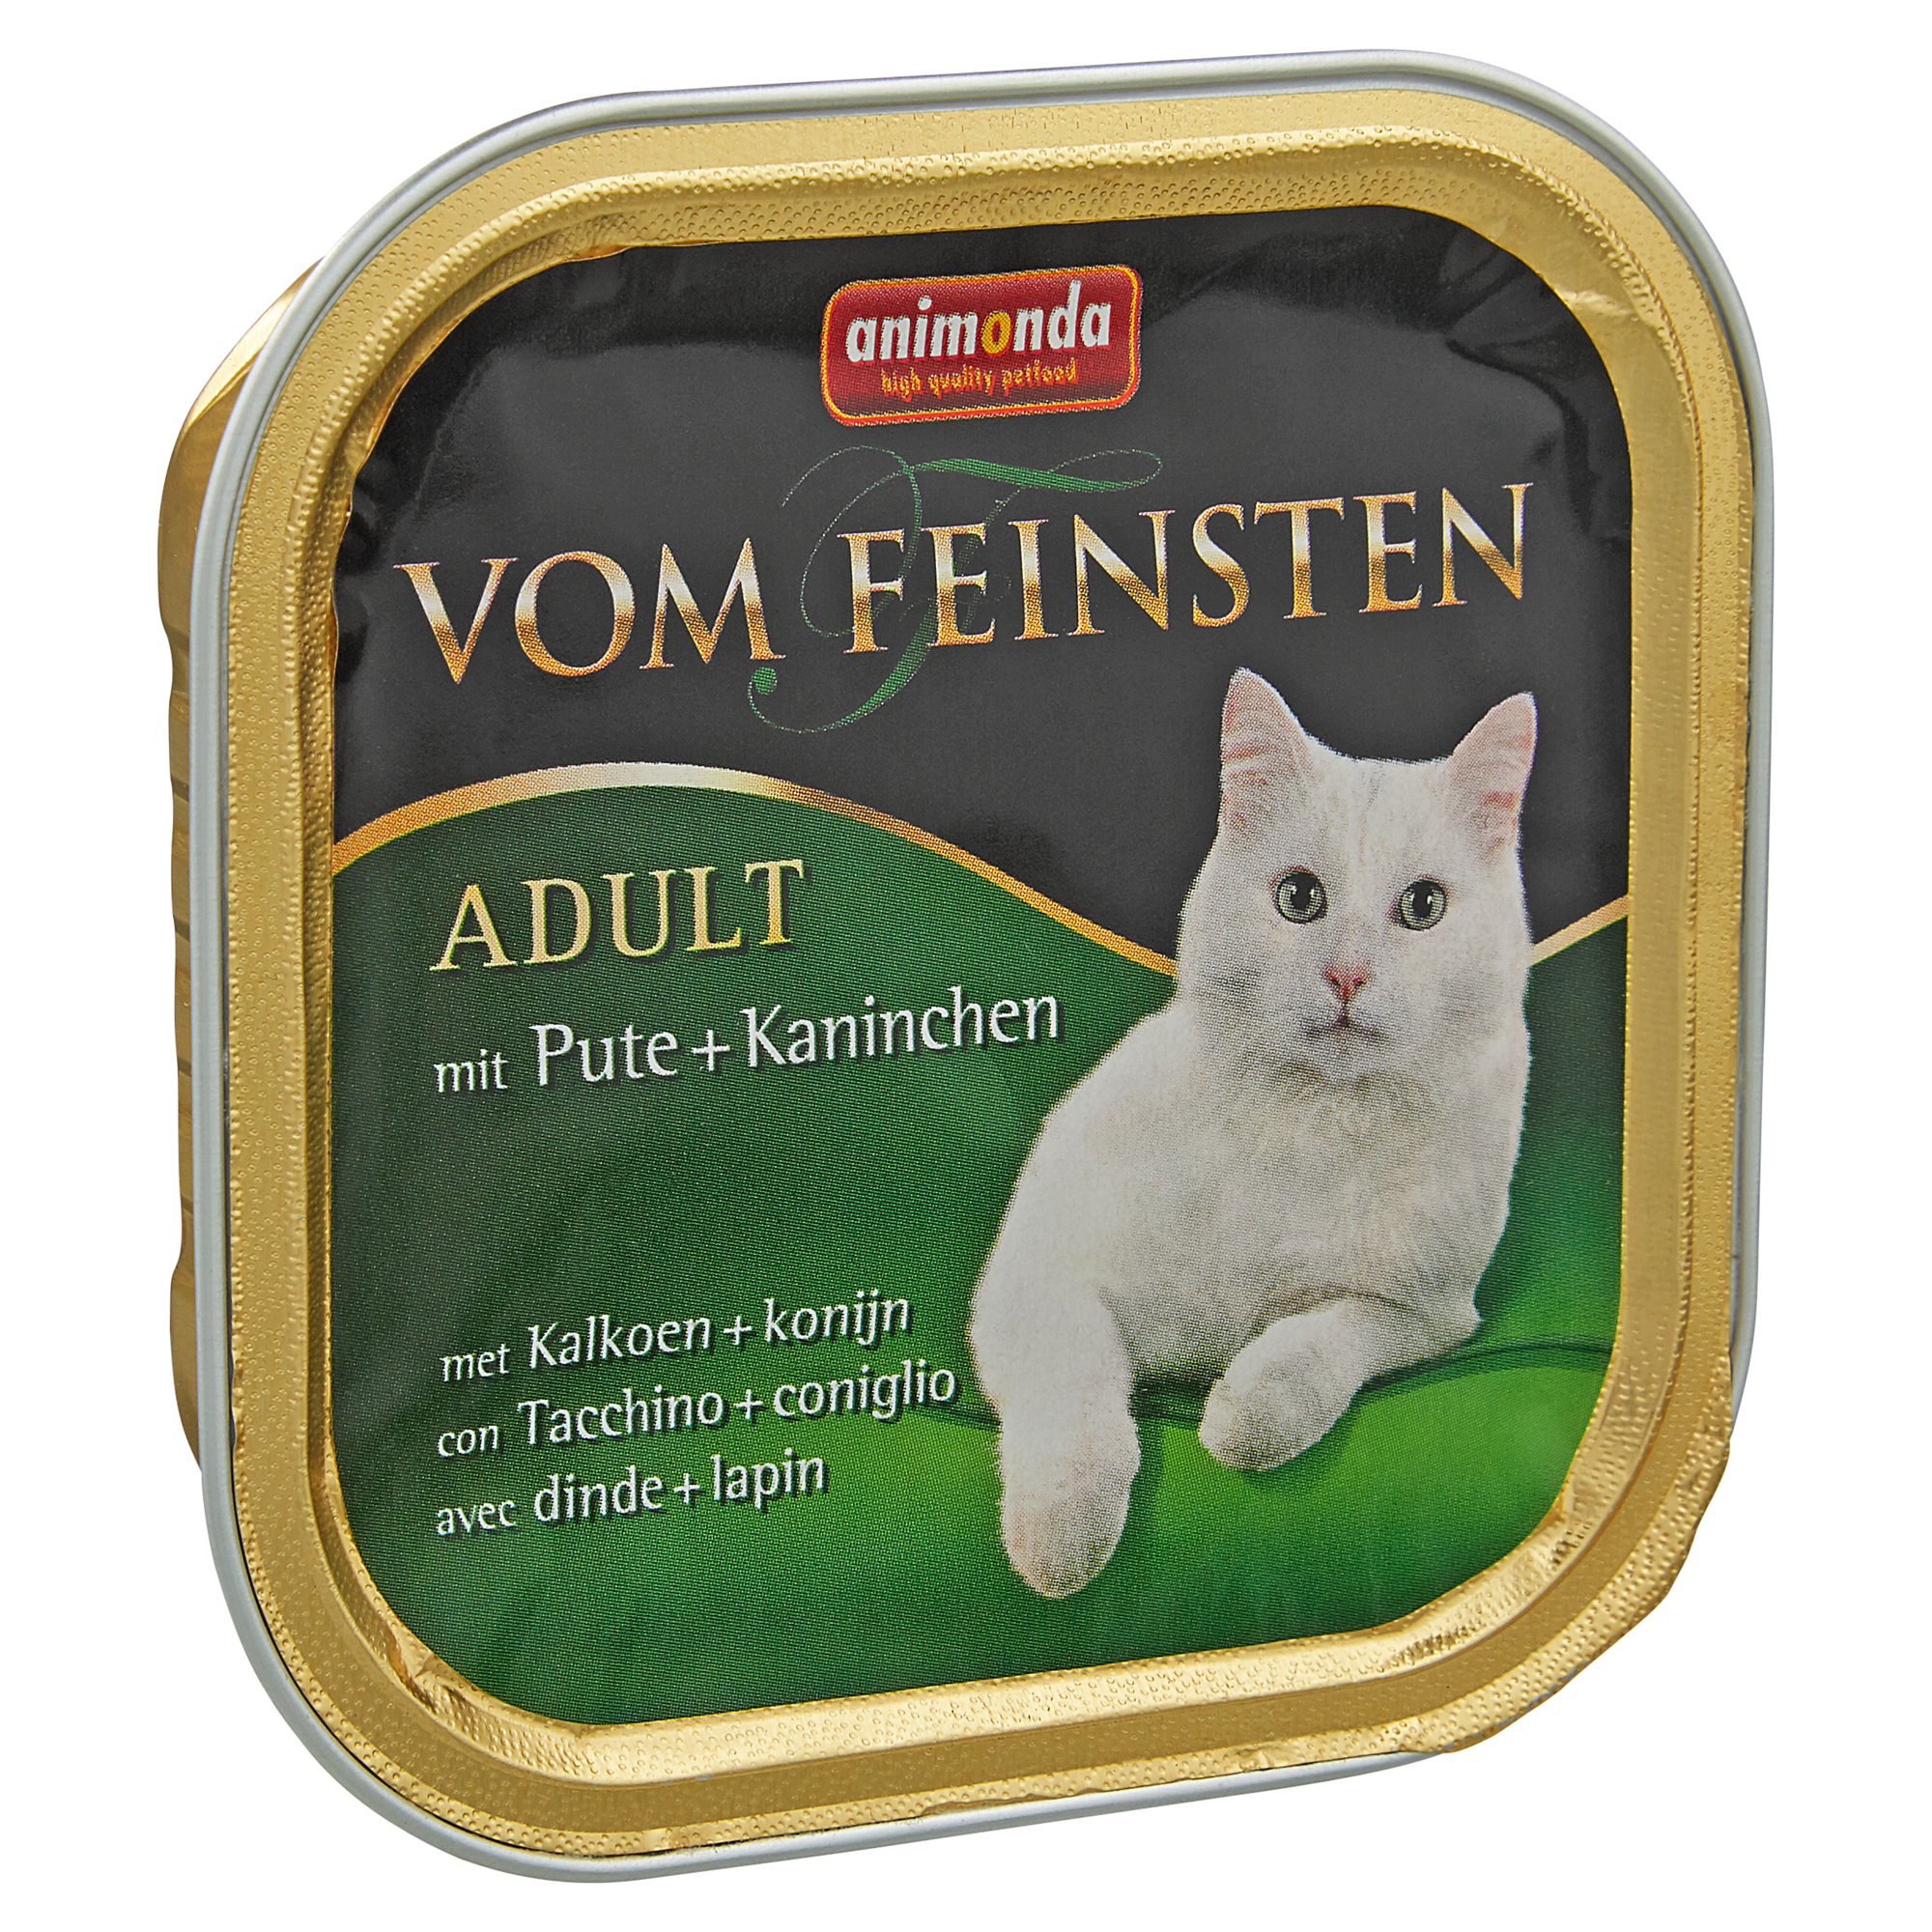 Katzennassfutter "Vom Feinsten" Adult mit Pute/Kaninchen 100 g + product picture